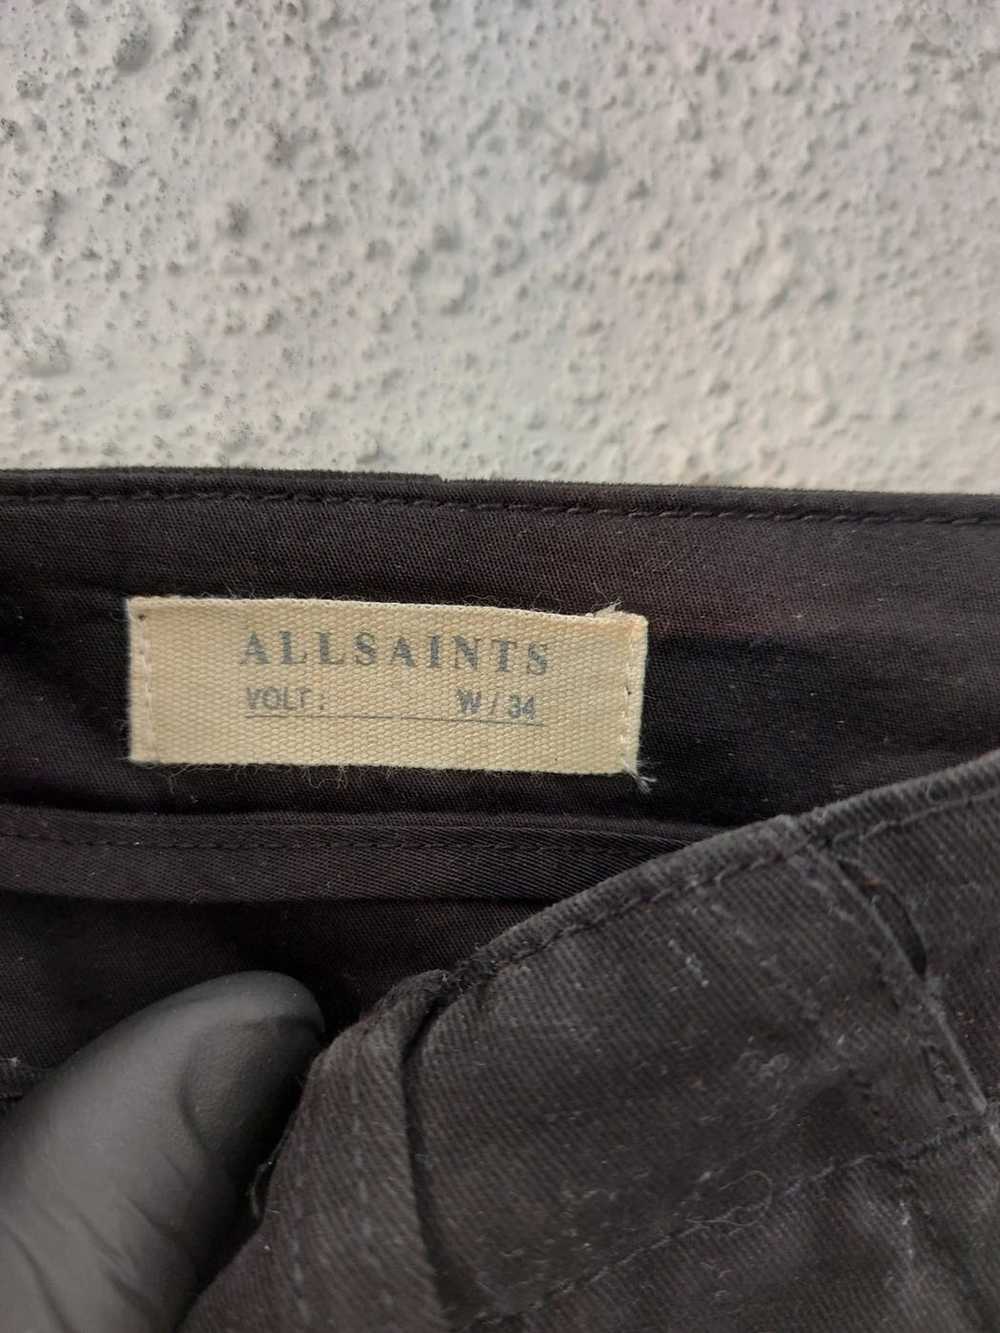 Allsaints ALLSAINTS PANTS 34 - image 5